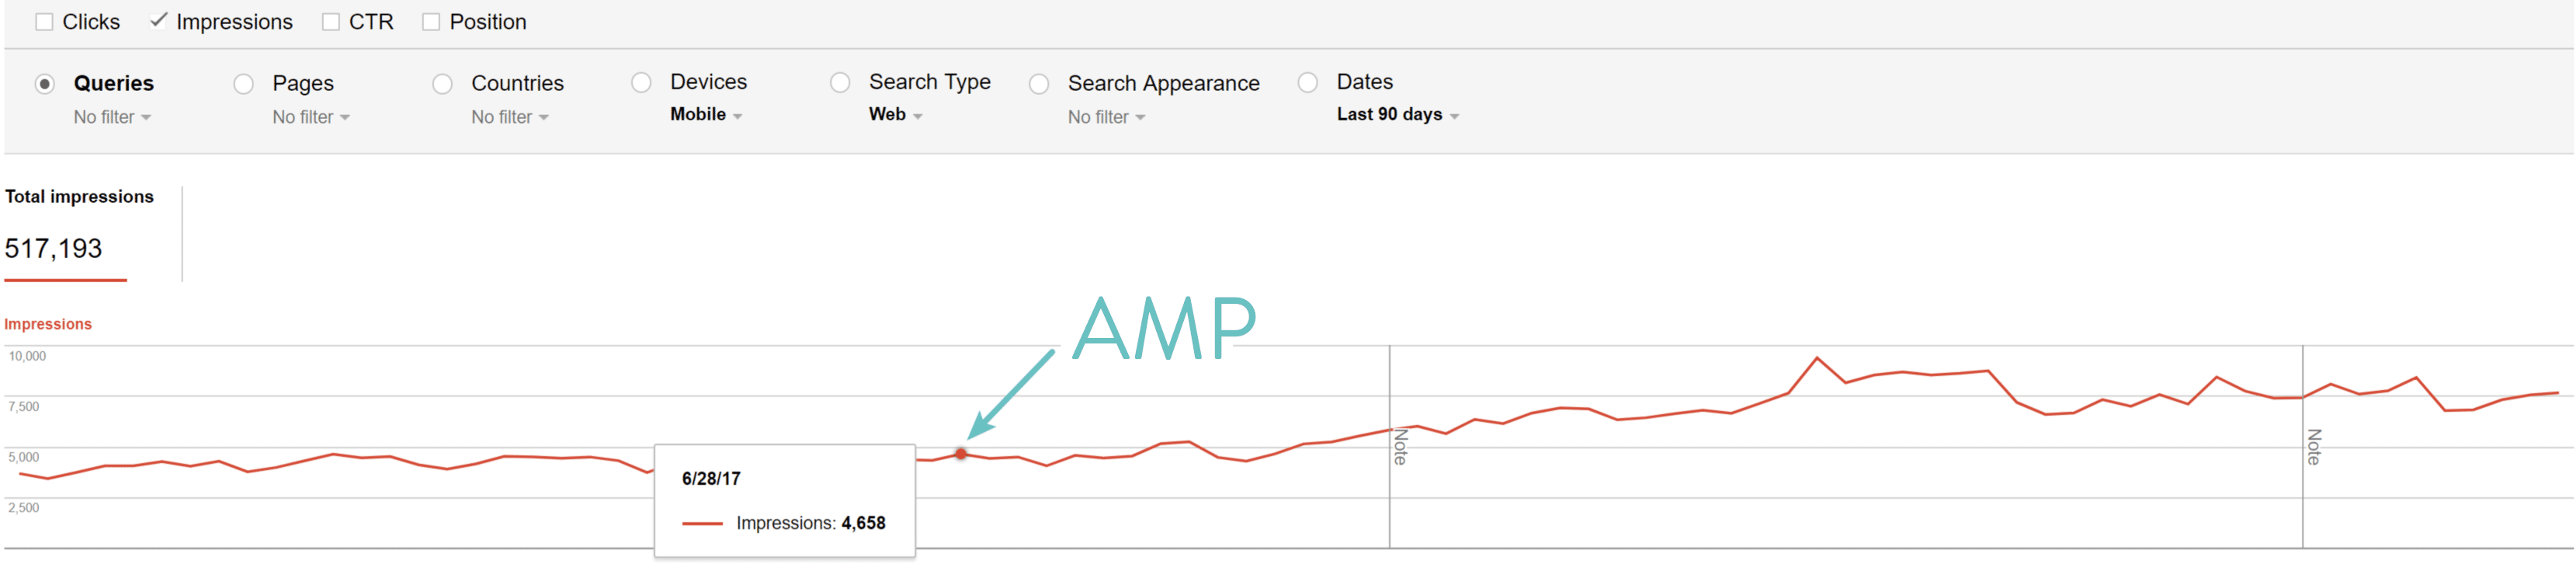 После включения Google AMP мы увидели большее количество показов